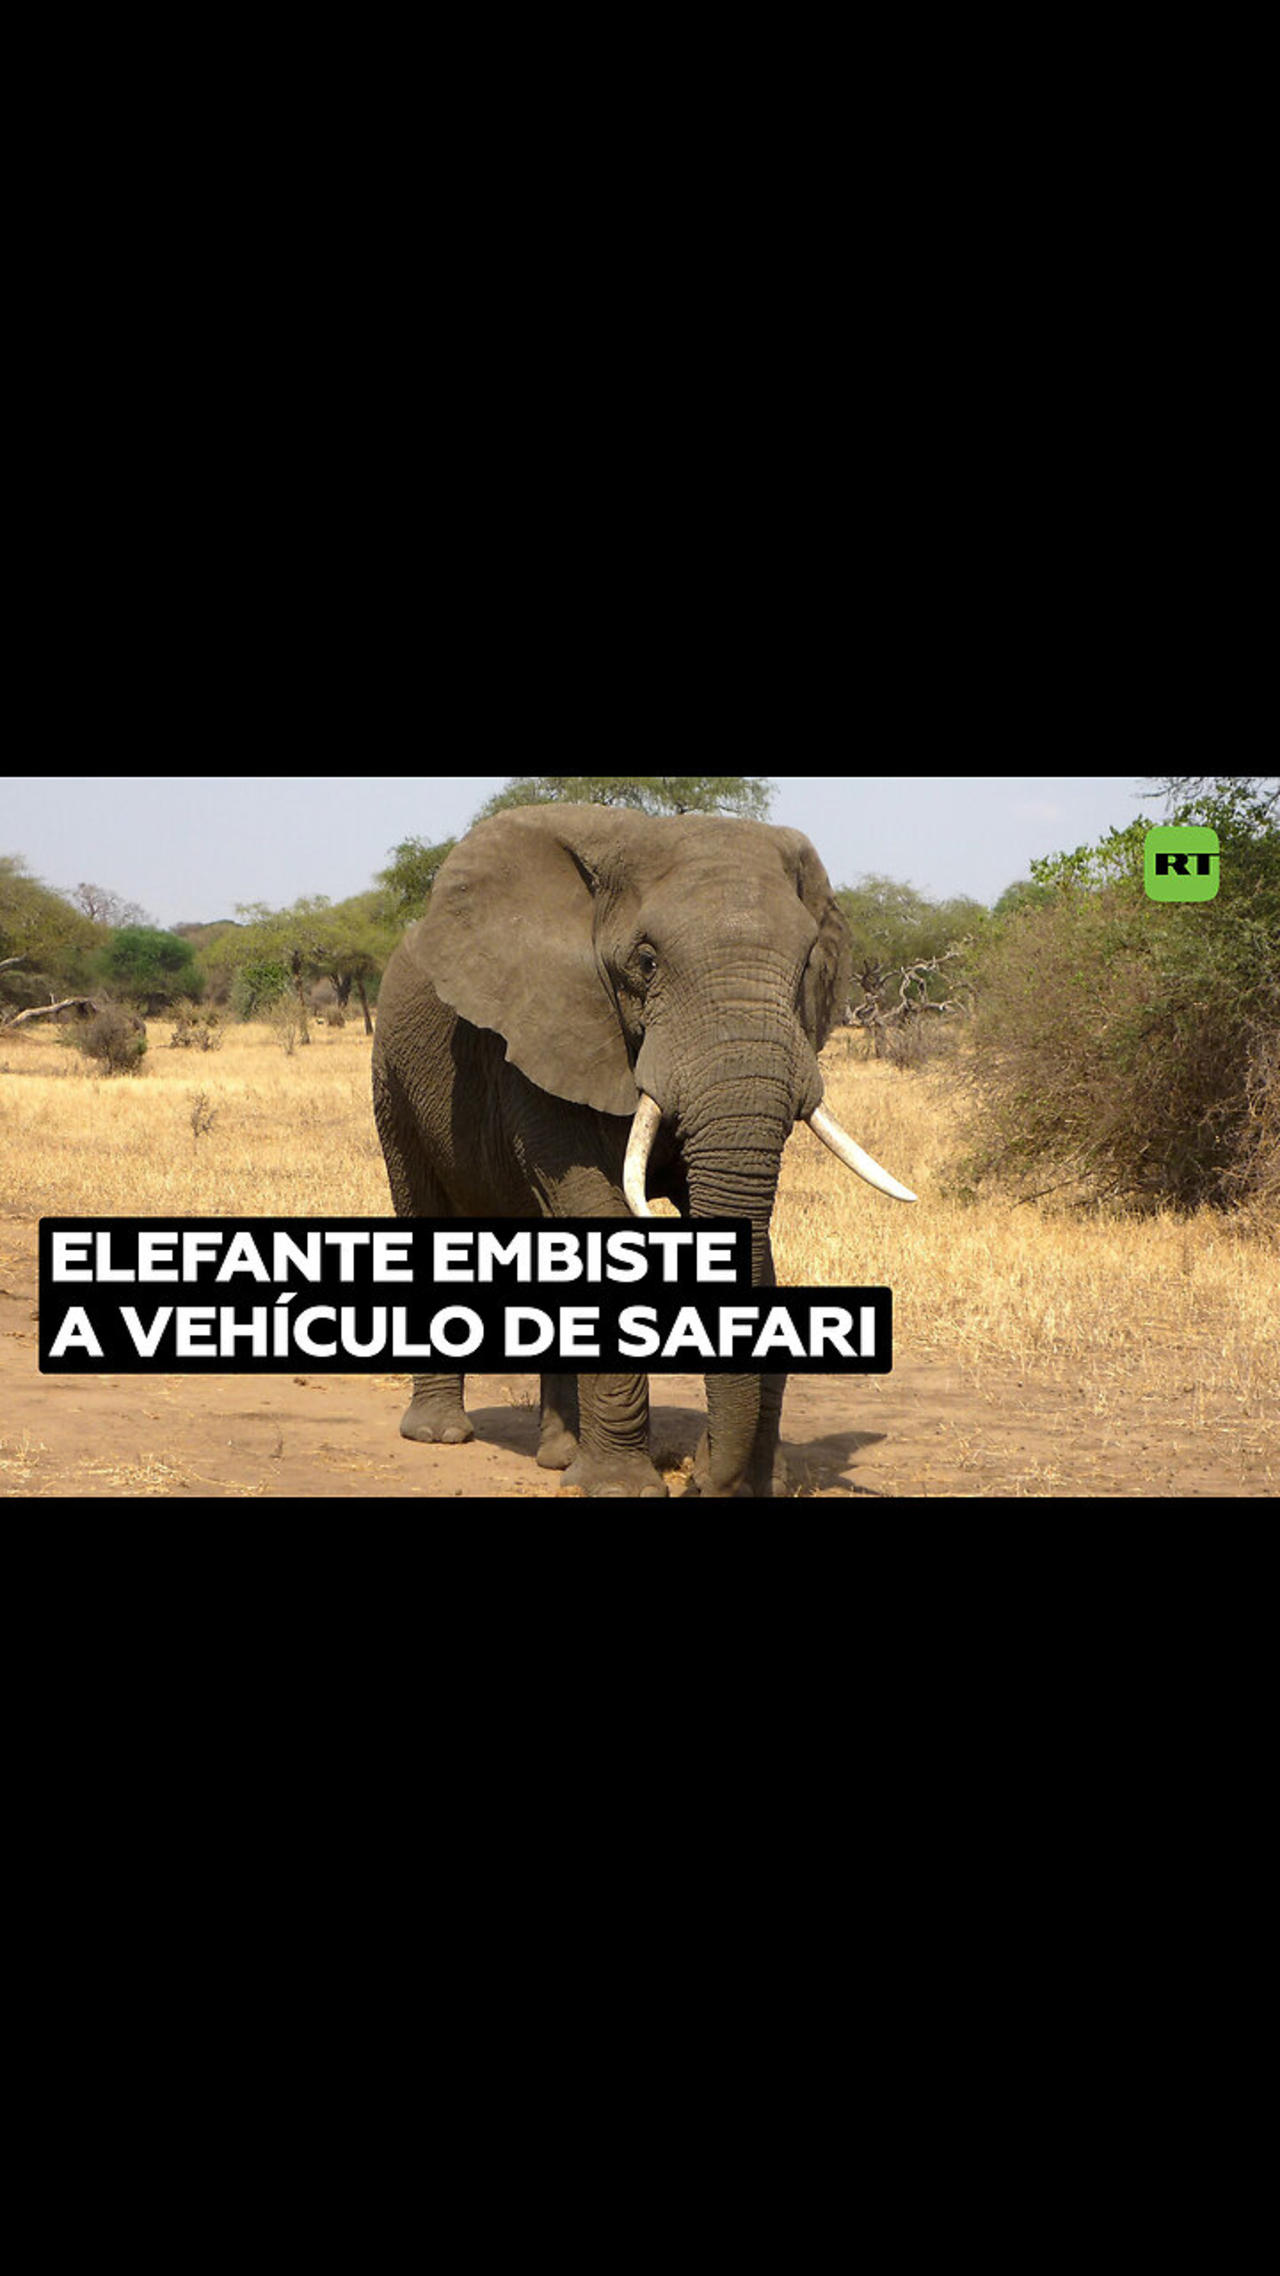 Un elefante atacó a un grupo de turistas provocando la muerte de una anciana